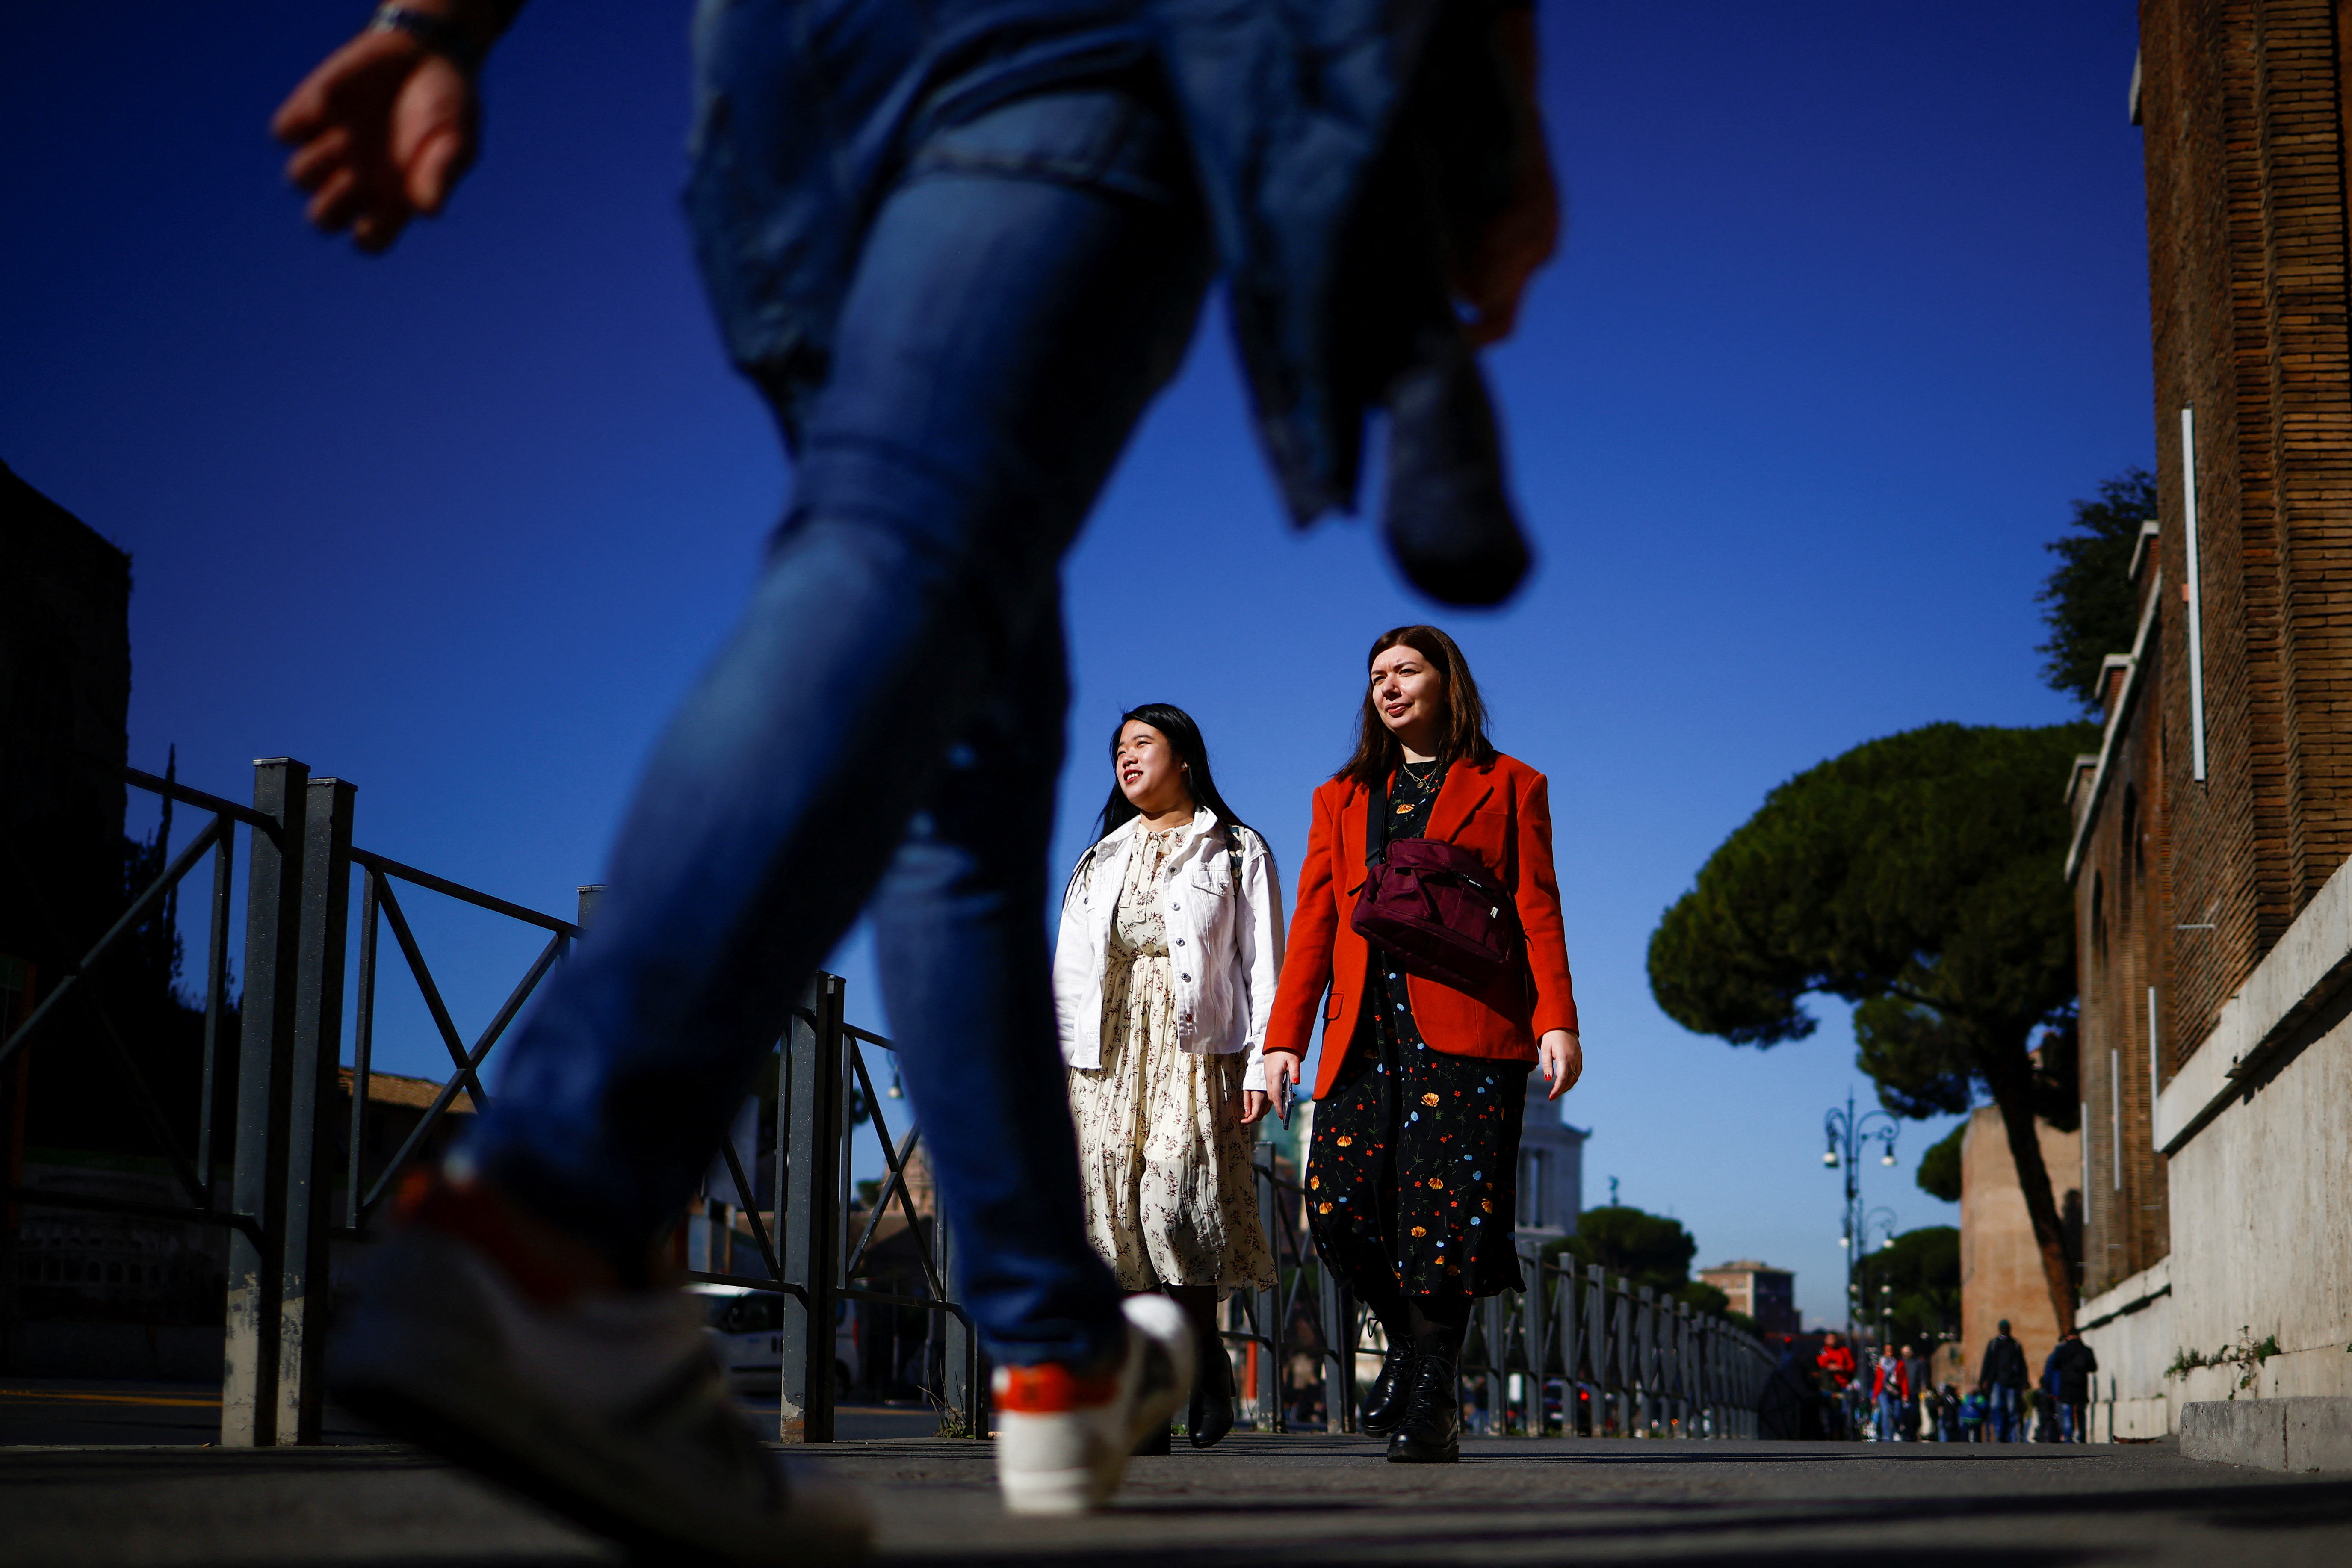 En la mayoría de las ciudades ya se puede caminar sin barbijo en lugares abiertos
February 11, 2022. REUTERS/Guglielmo Mangiapane